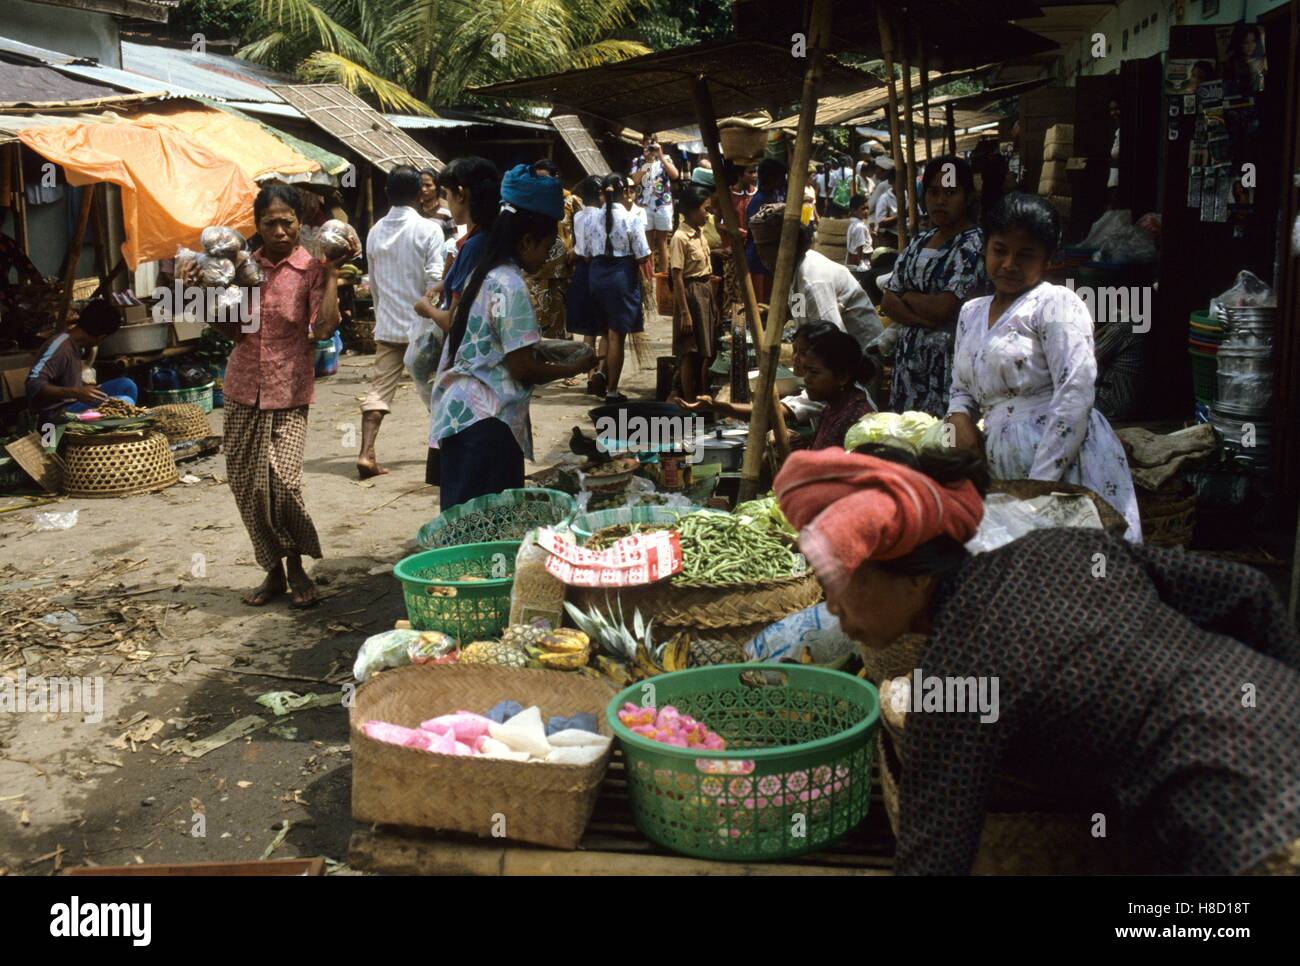 Markt auf Bali, Indonesien. Key: Marktstand, Marktfrauen, Händler, Warenkorb. Stock Photo